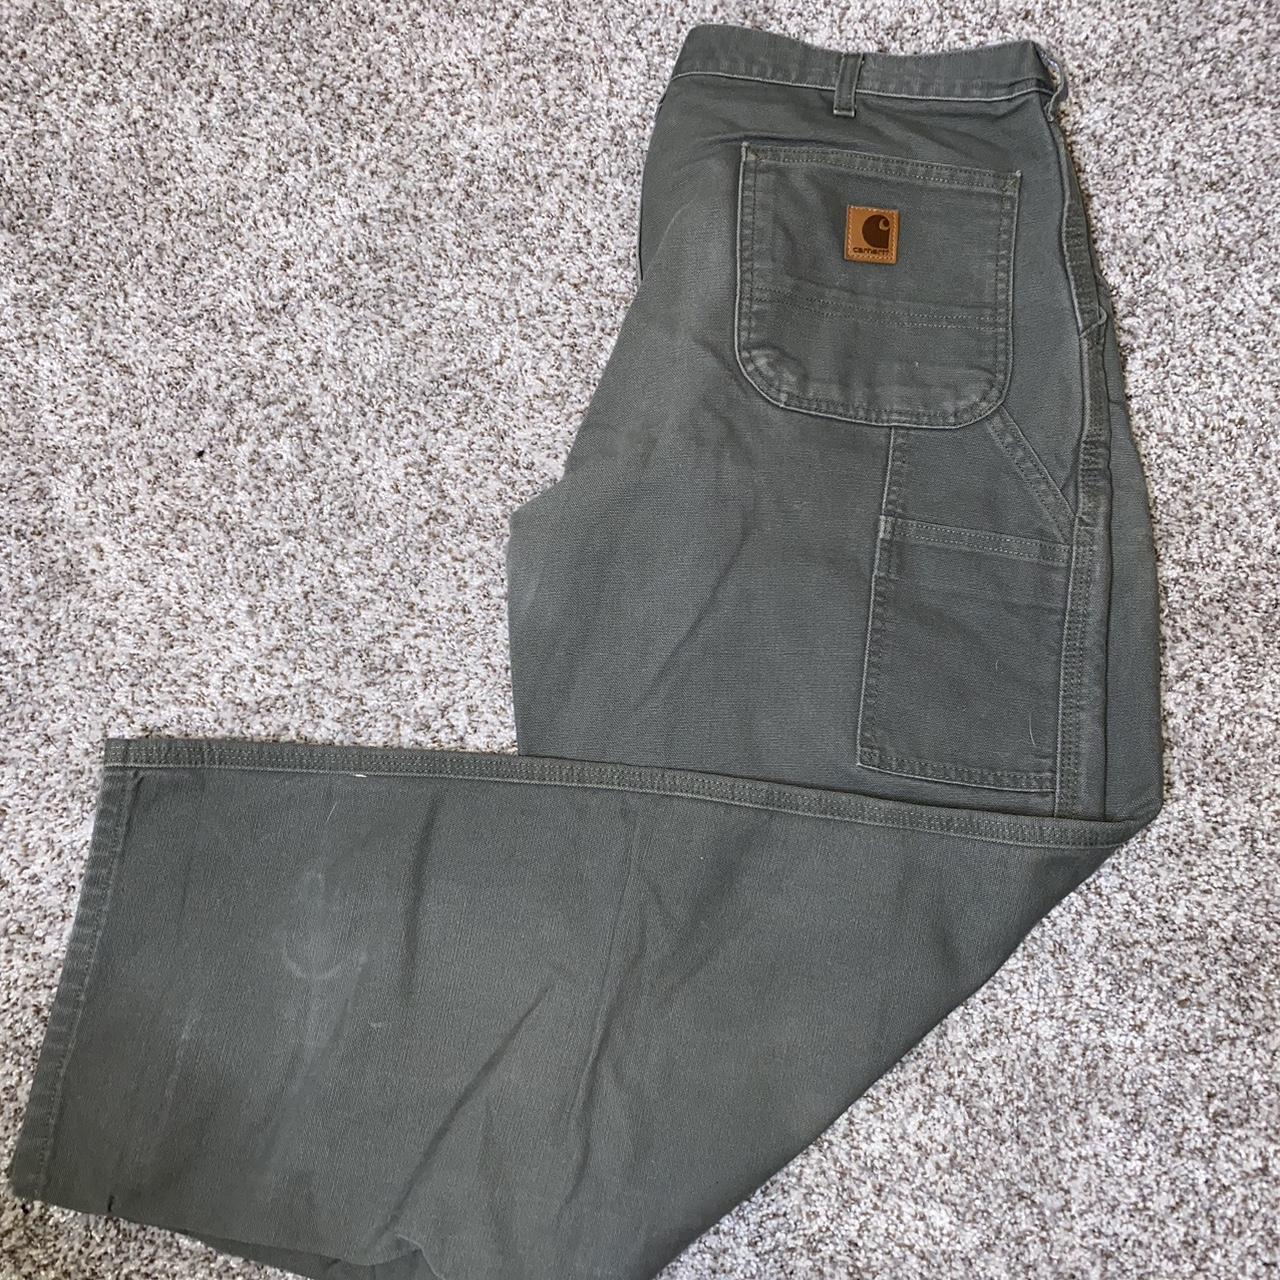 Green Carhartt Carpenter Pants Size 36x32! Some knee... - Depop